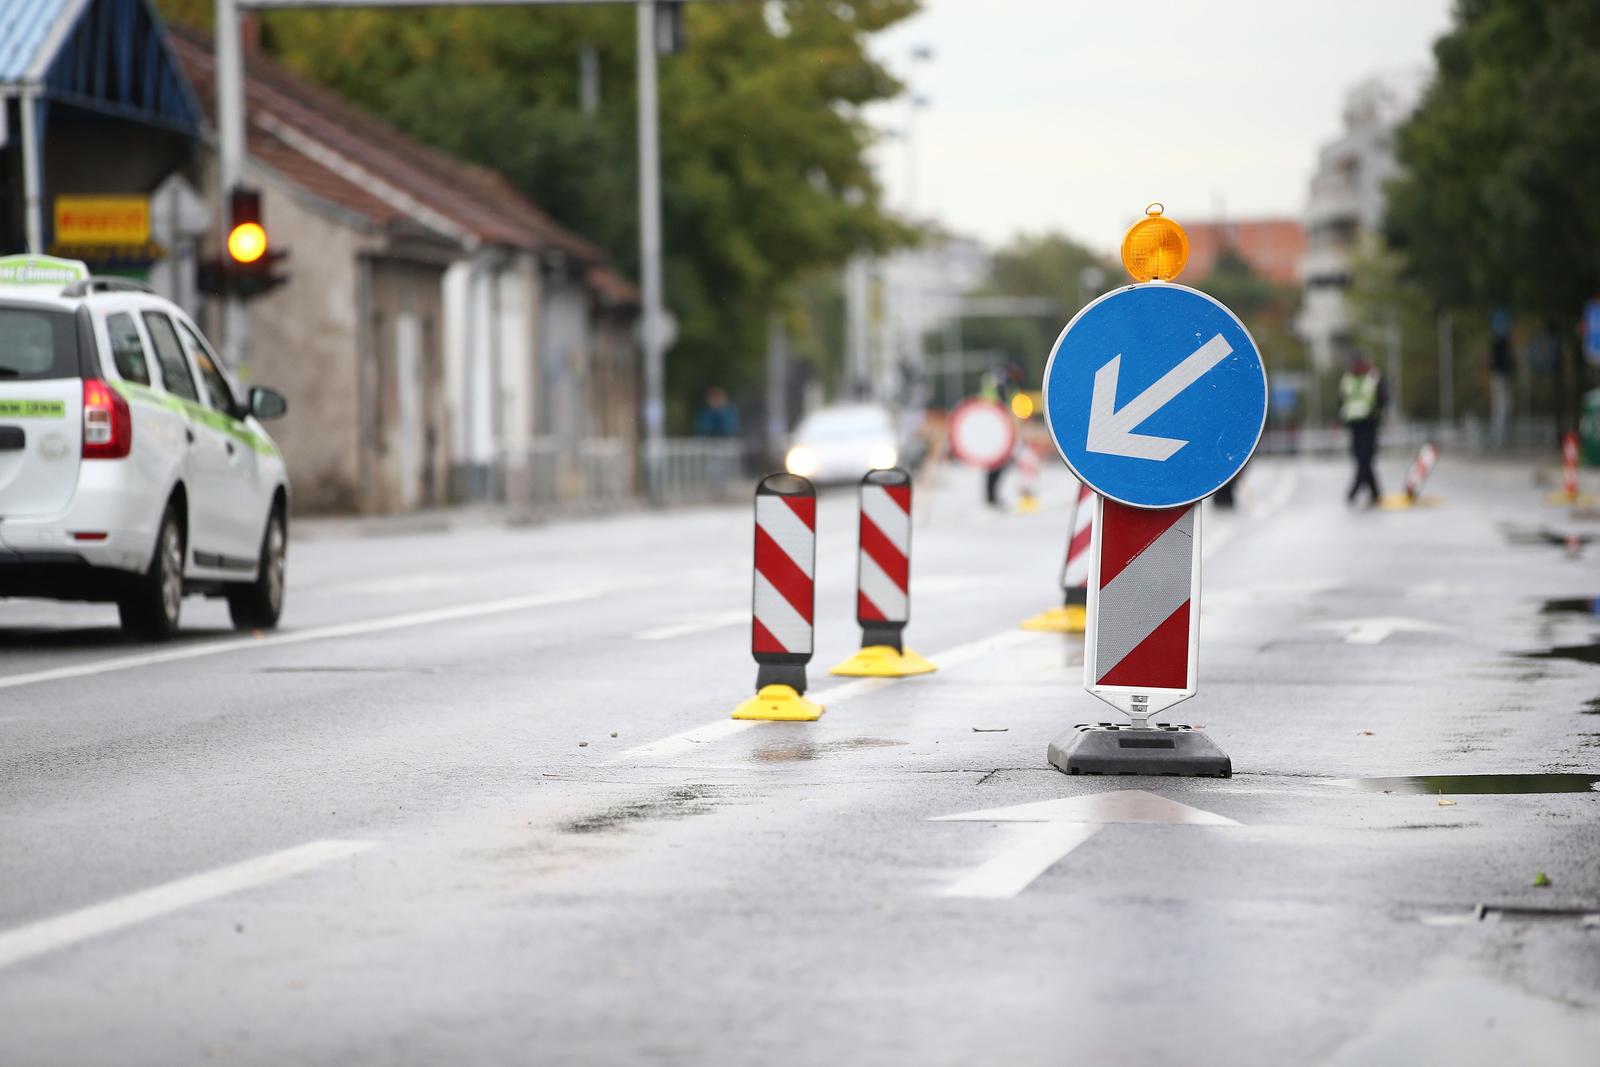 30.09.2021., Zagreb - Selska ulica zatvorena je za promet zbog radova na vodovodnoj mrezi."nPhoto: Matija Habljak/PIXSELL